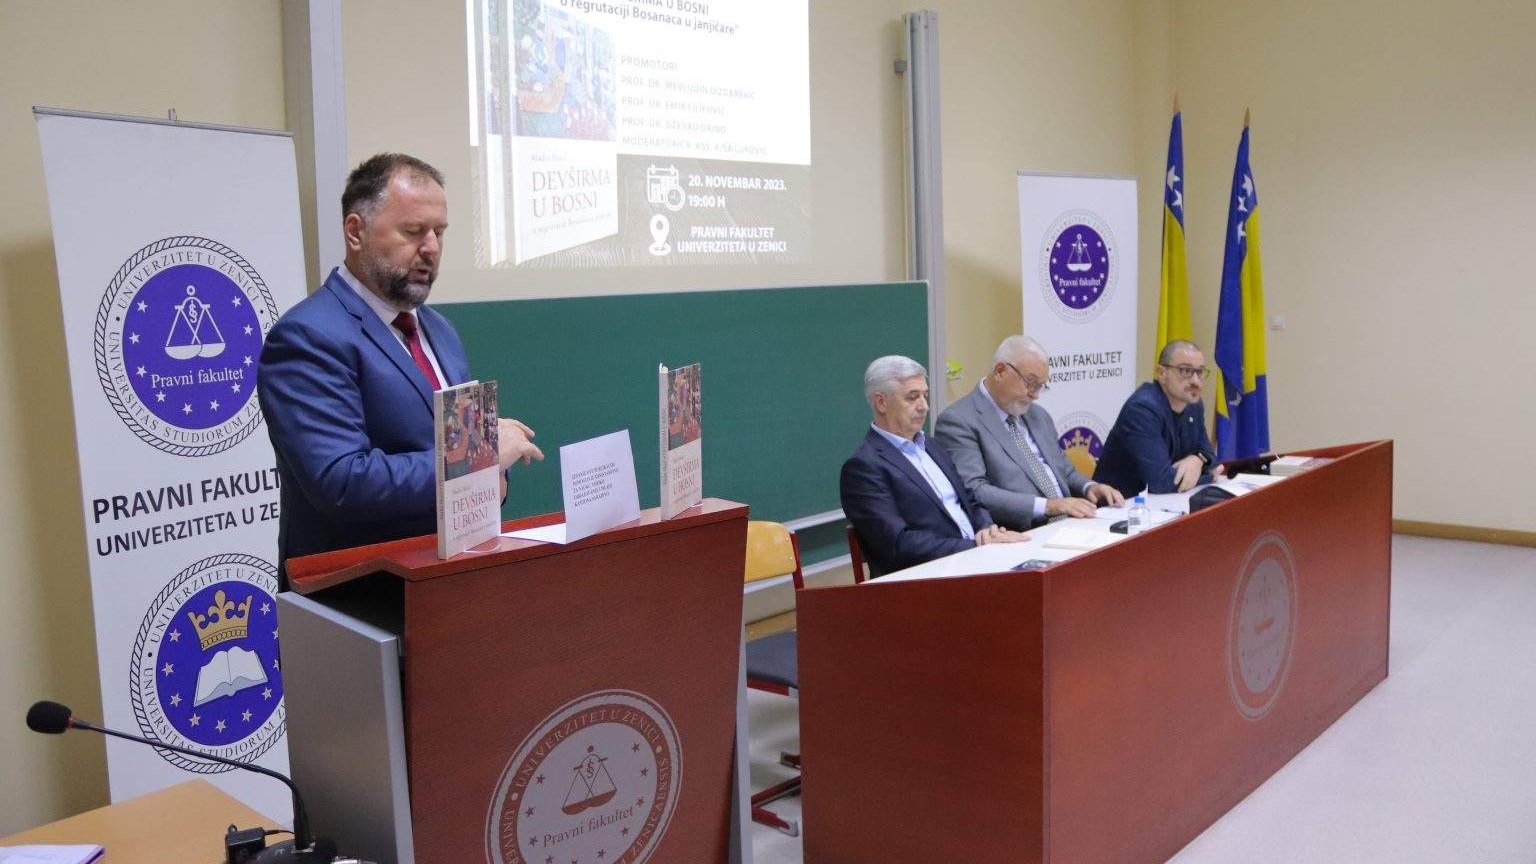 Na Pravnom fakultetu u Zenici promovisana knjiga "Devširma u Bosni - o regrutaciji Bosanaca u janjičare"